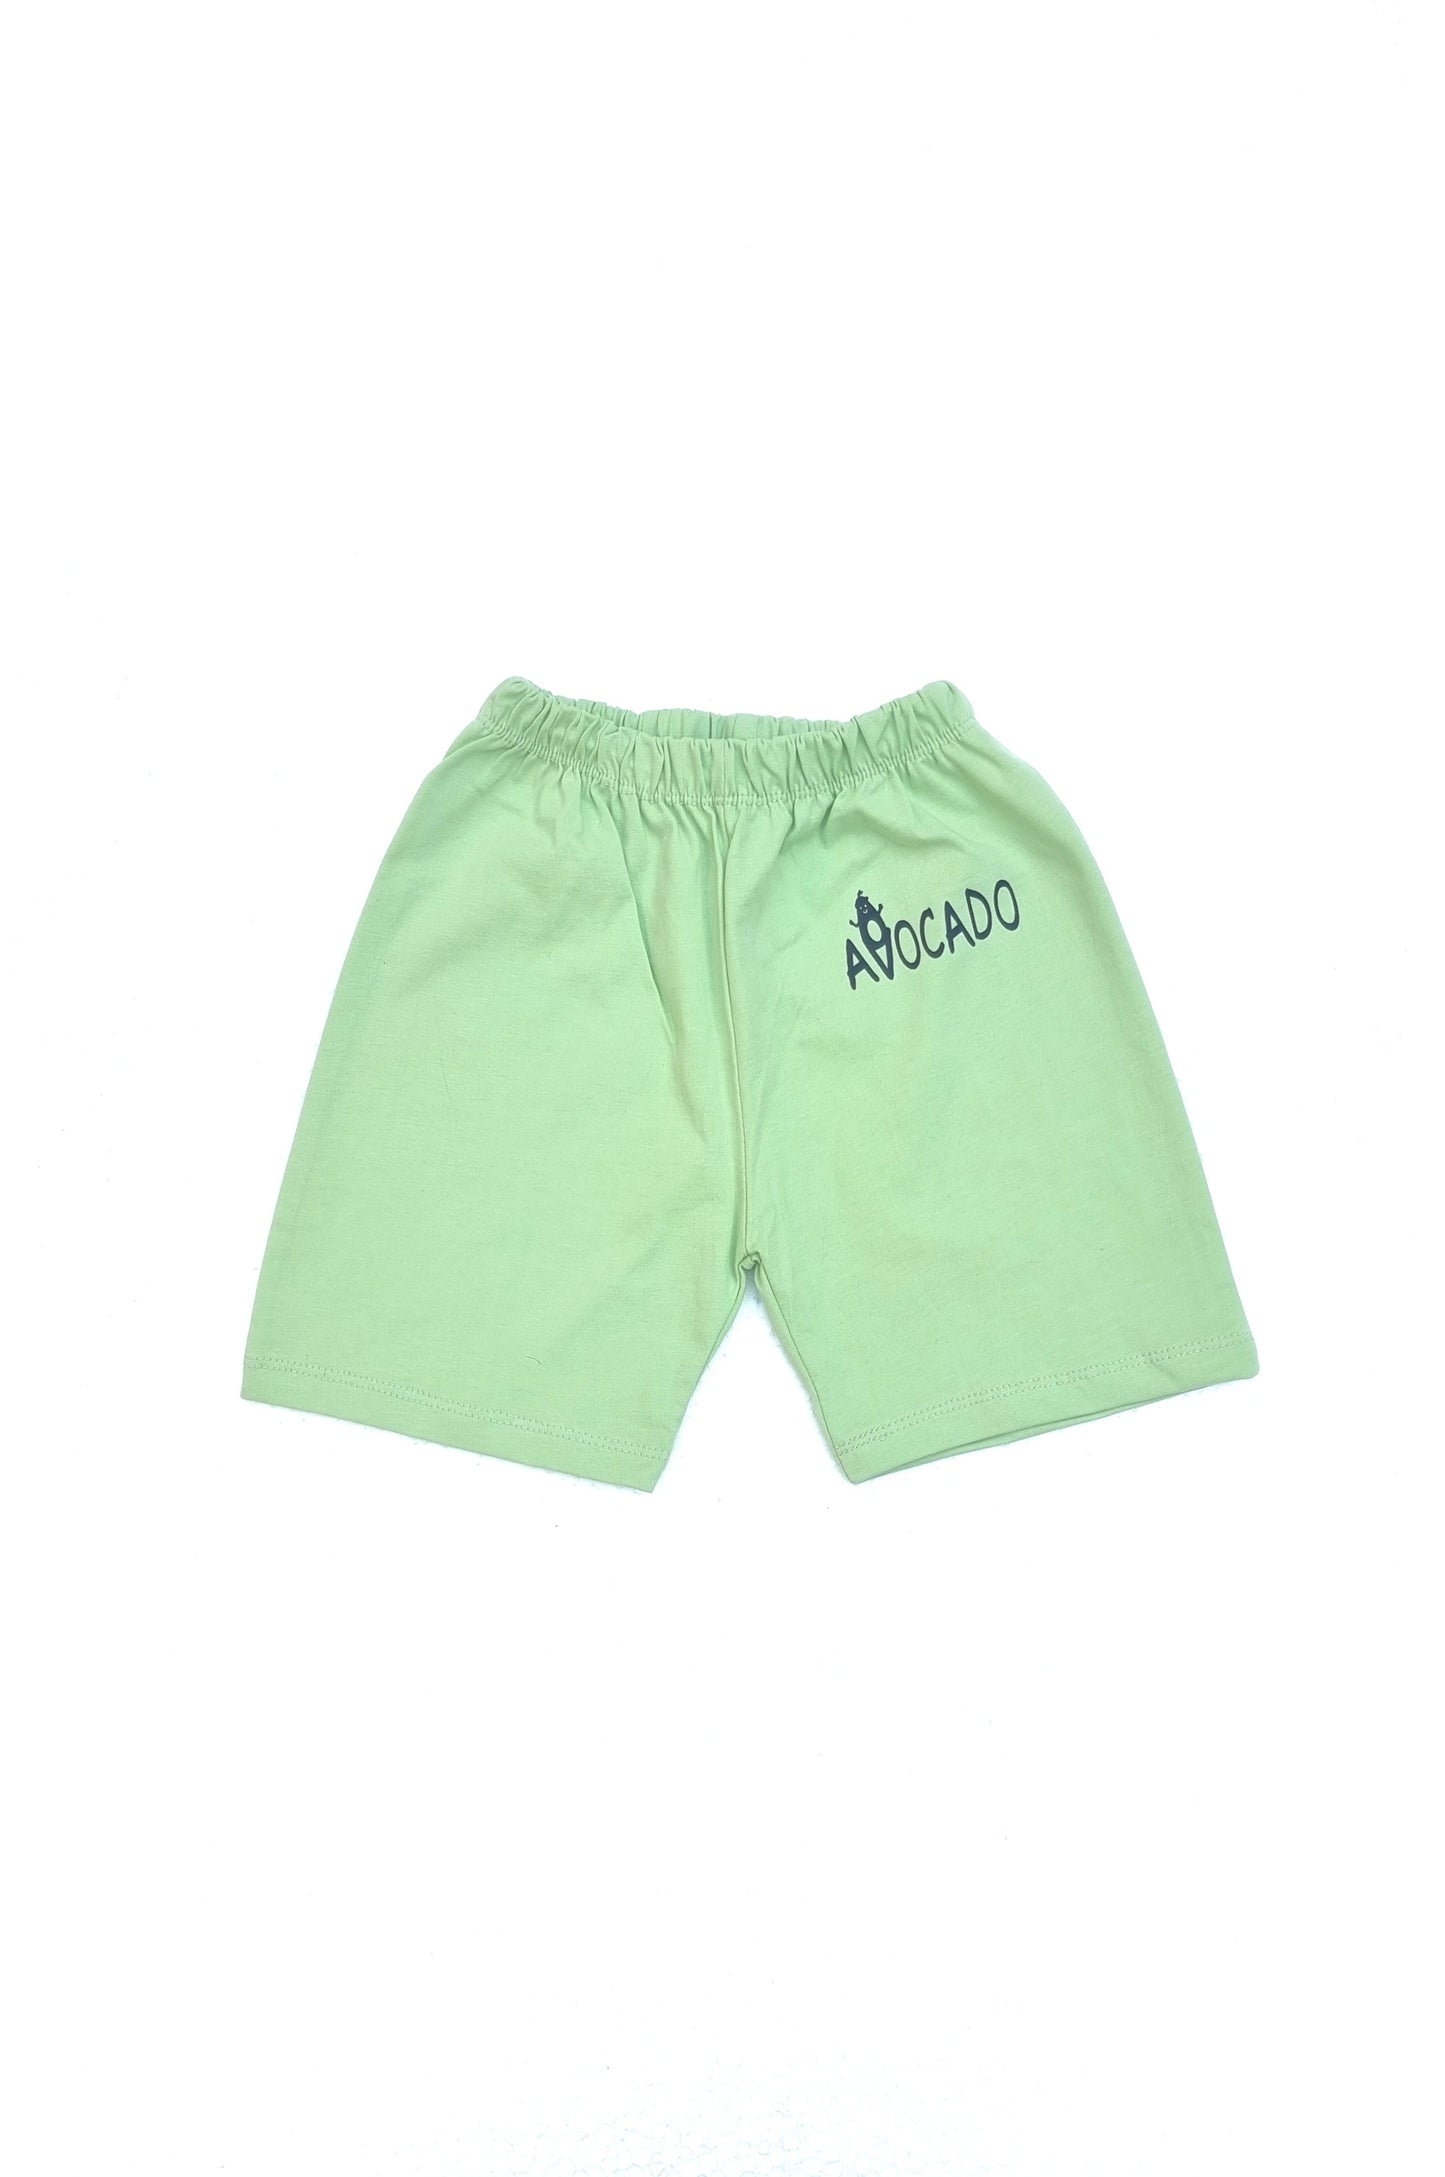 Pista Green Blended Short